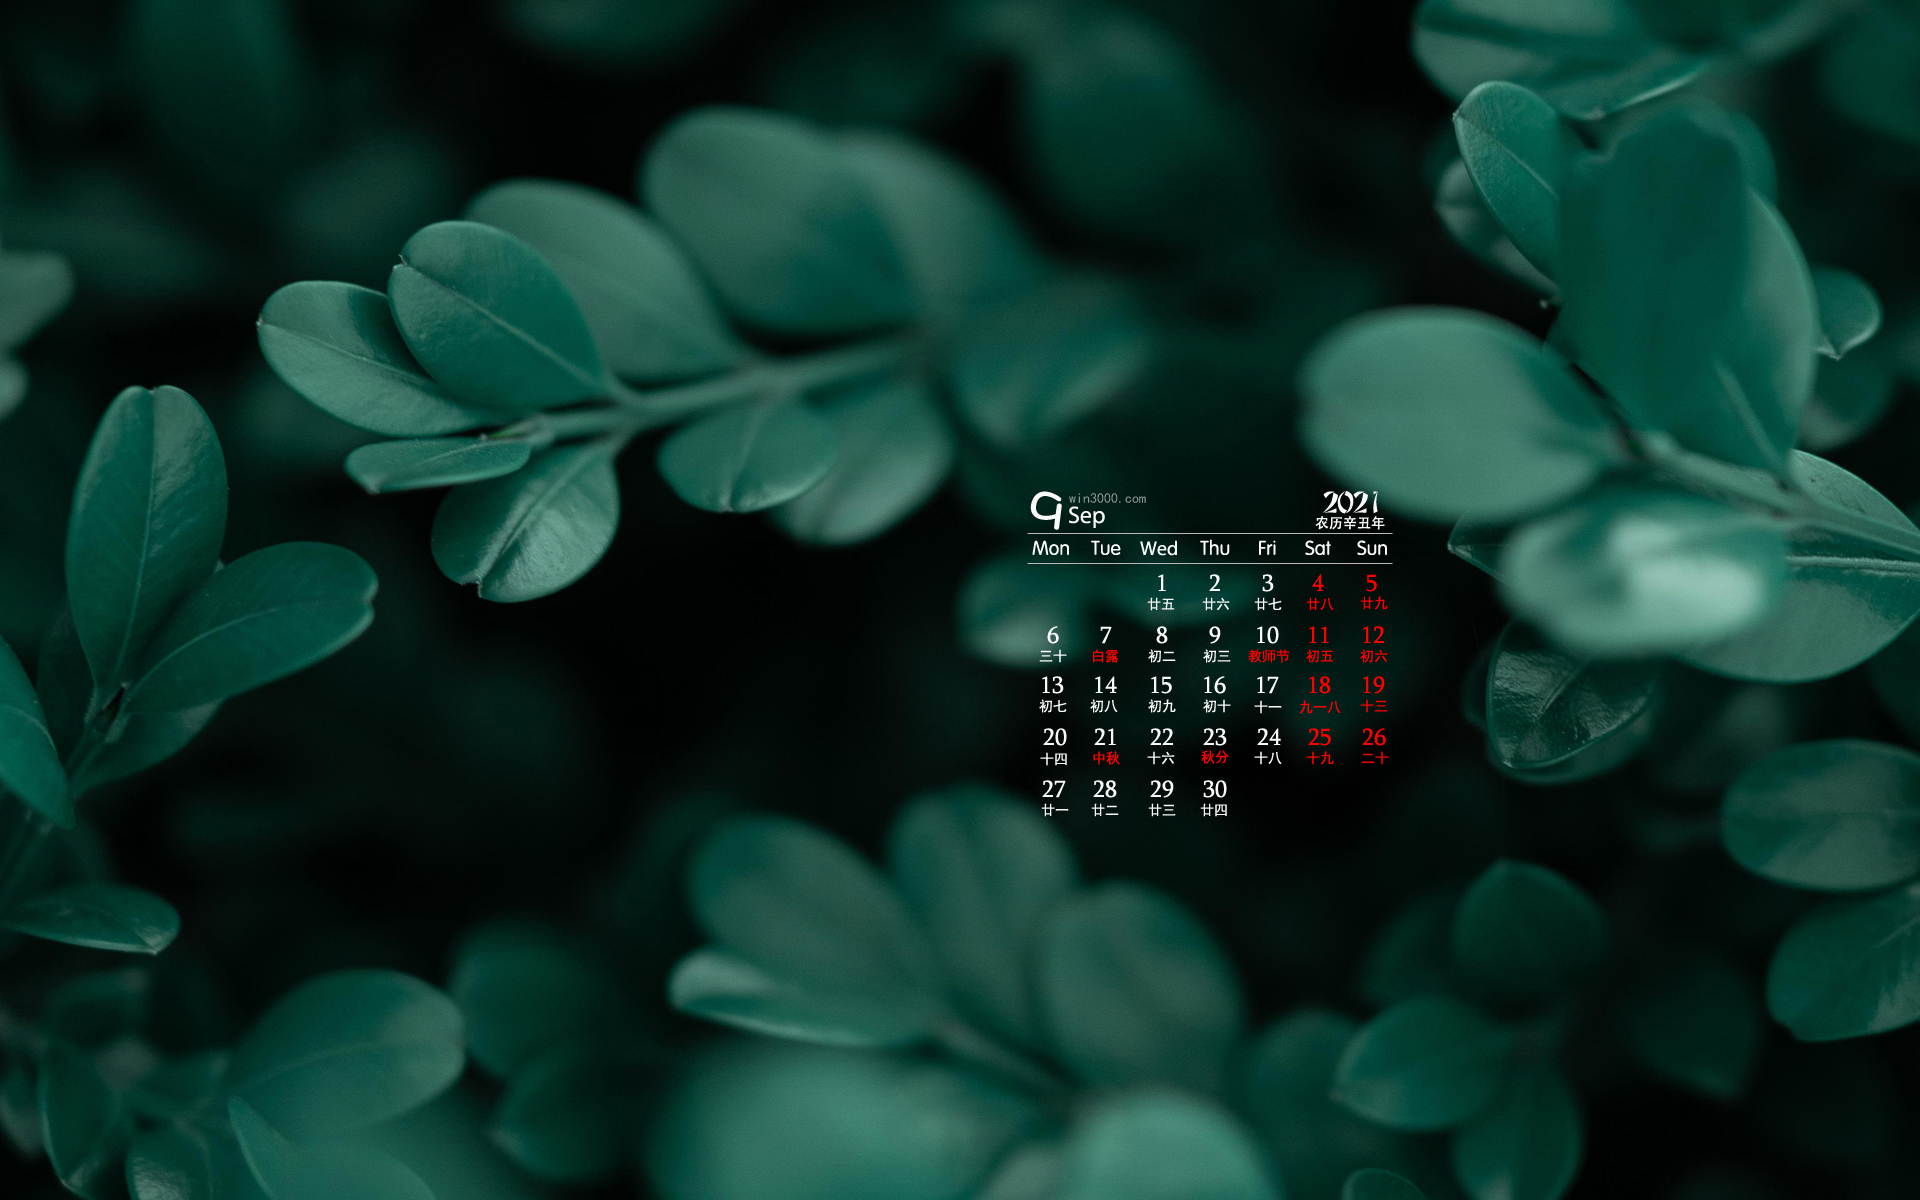 2021年9月翠绿色植物电脑日历壁纸